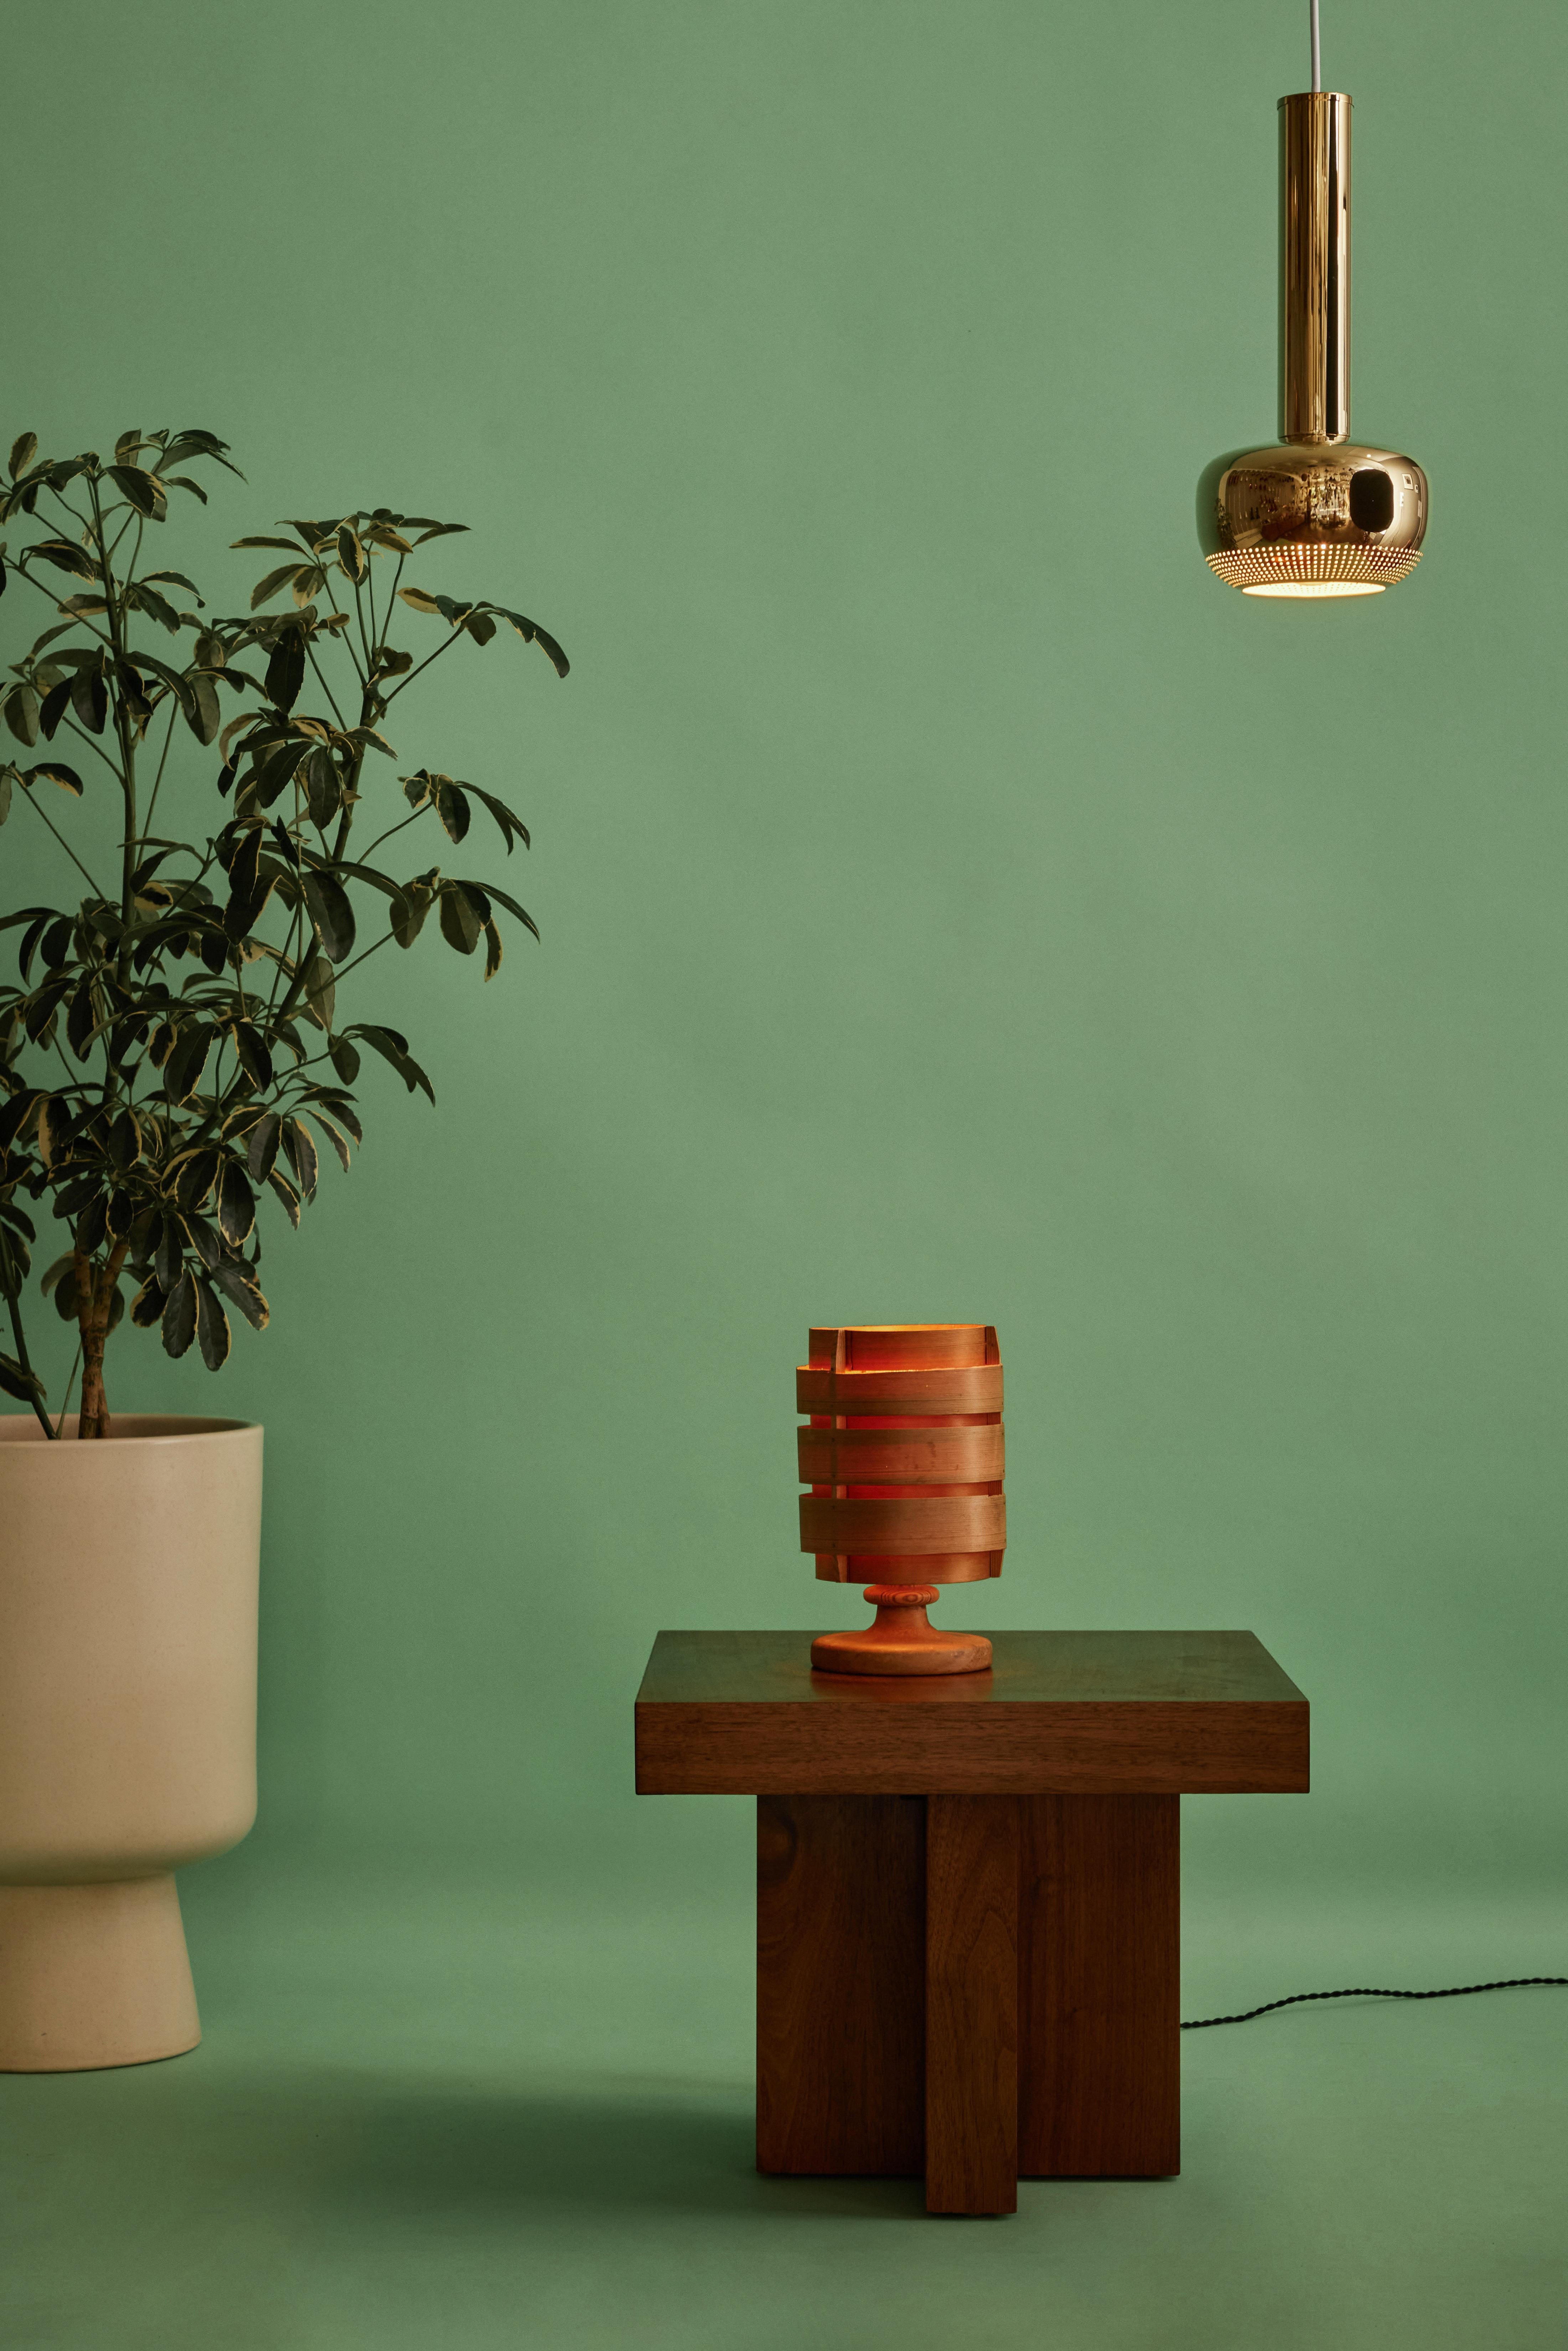 1960s Hans-Agne Jakobsson Model B148 Wood Table Lamp for AB Ellysett. Conçue et produite par Jakobsson à Markaryd, en Suède, elle est réalisée en bois courbé fin avec une structure de base en bois massif. Cette lampe rare et sculpturale est de plus